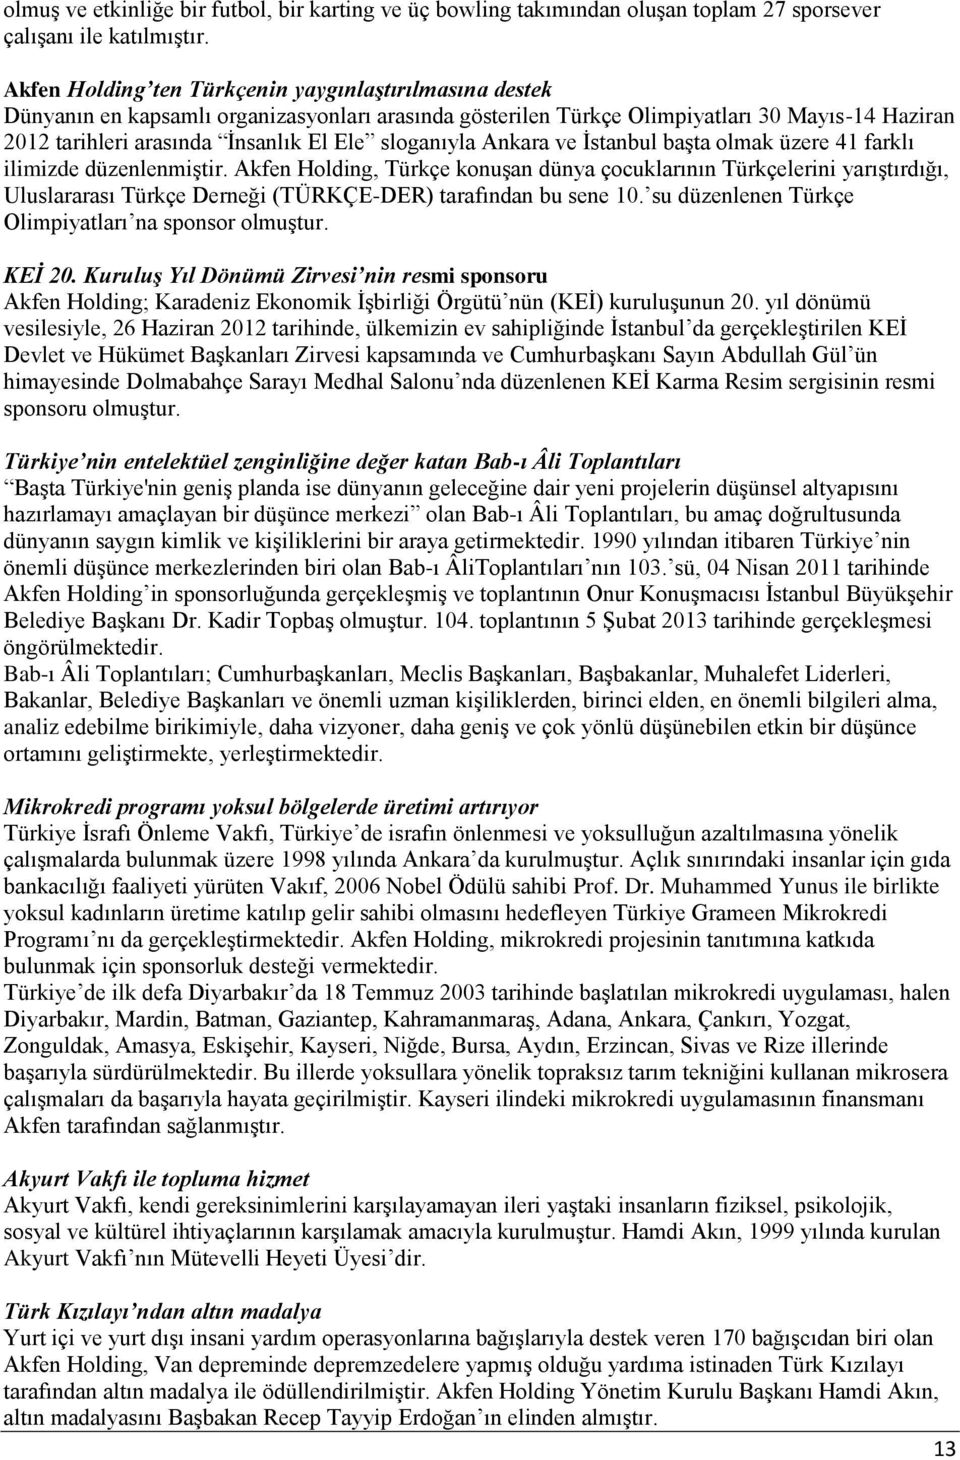 sloganıyla Ankara ve İstanbul başta olmak üzere 41 farklı ilimizde düzenlenmiştir.